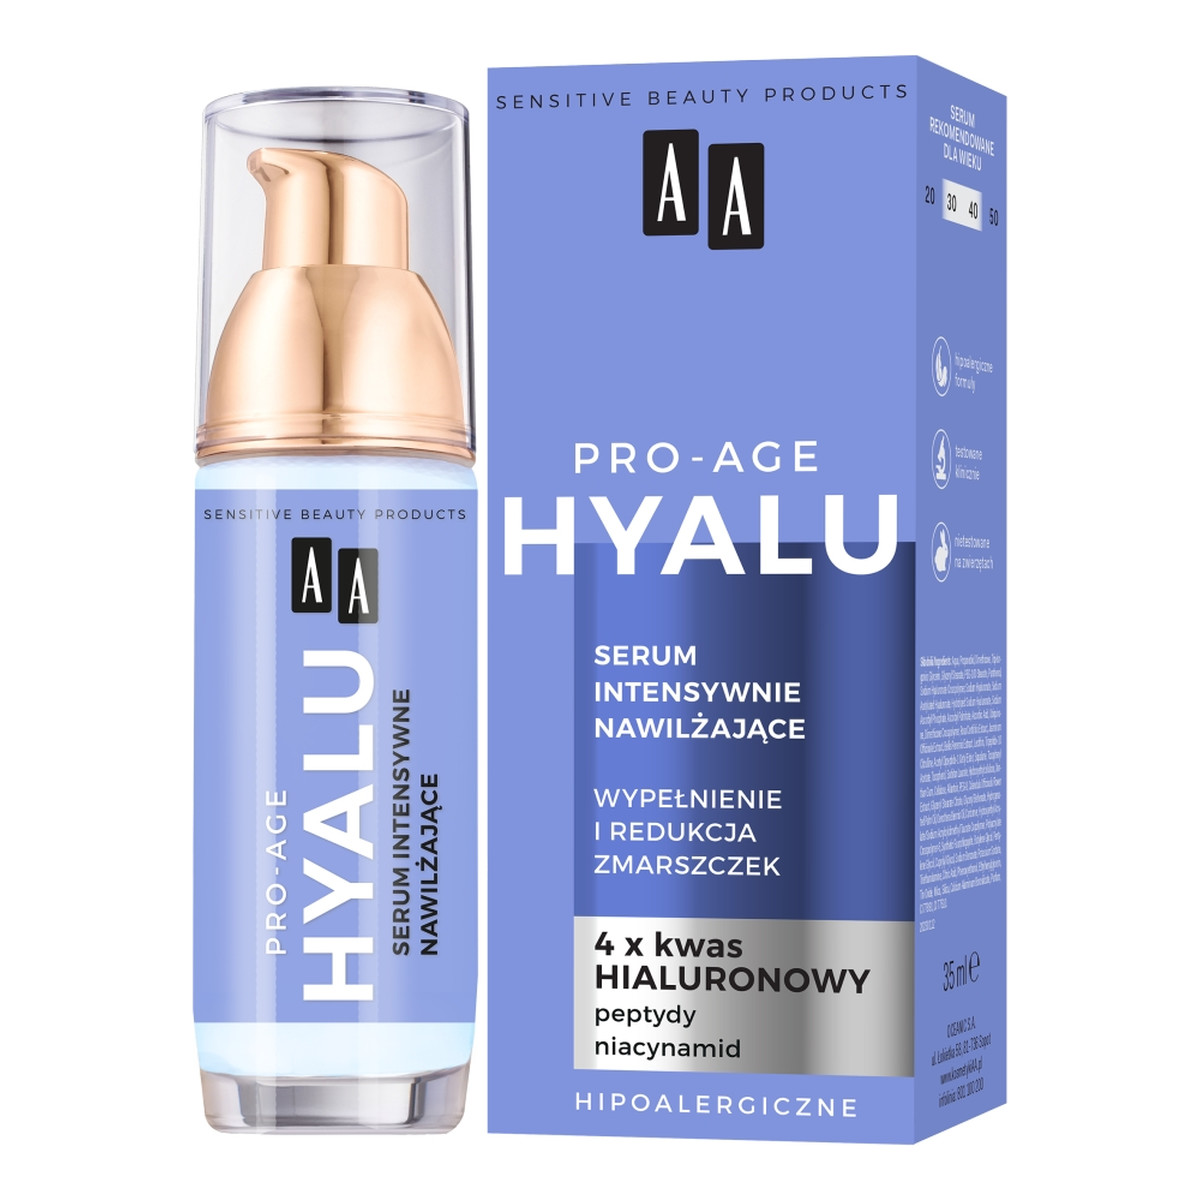 AA Pro-Age Hyalu Serum intensywnie nawilżające 35ml